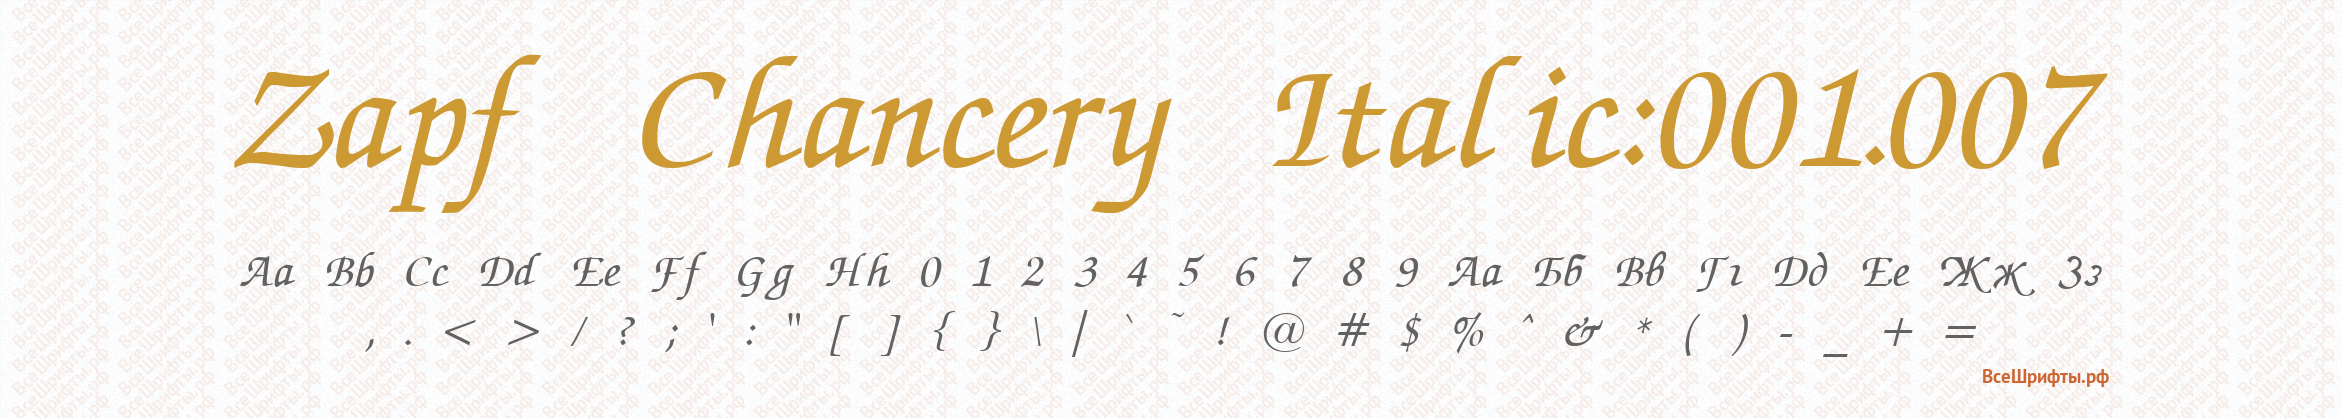 Шрифт Zapf Chancery Italic:001.007